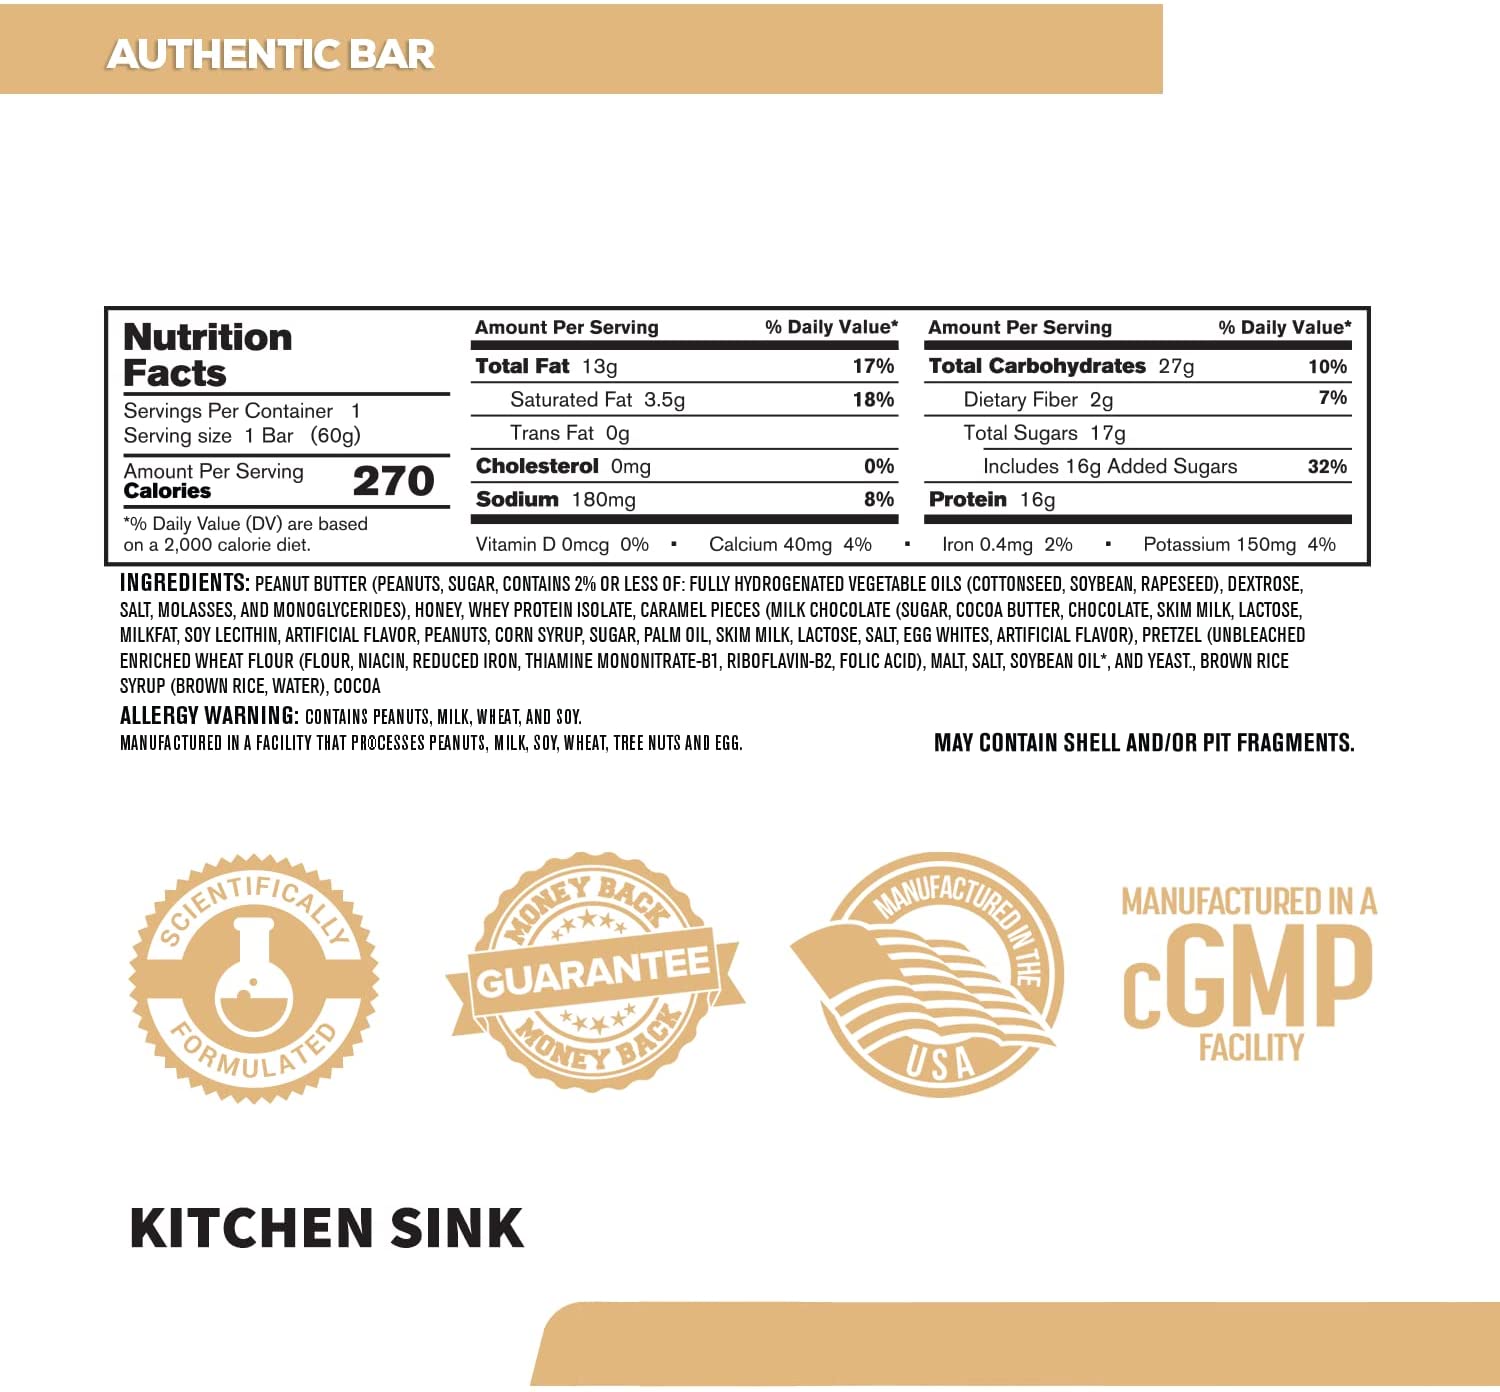 Authentic Protein Bar Kitchen Sink / 60g